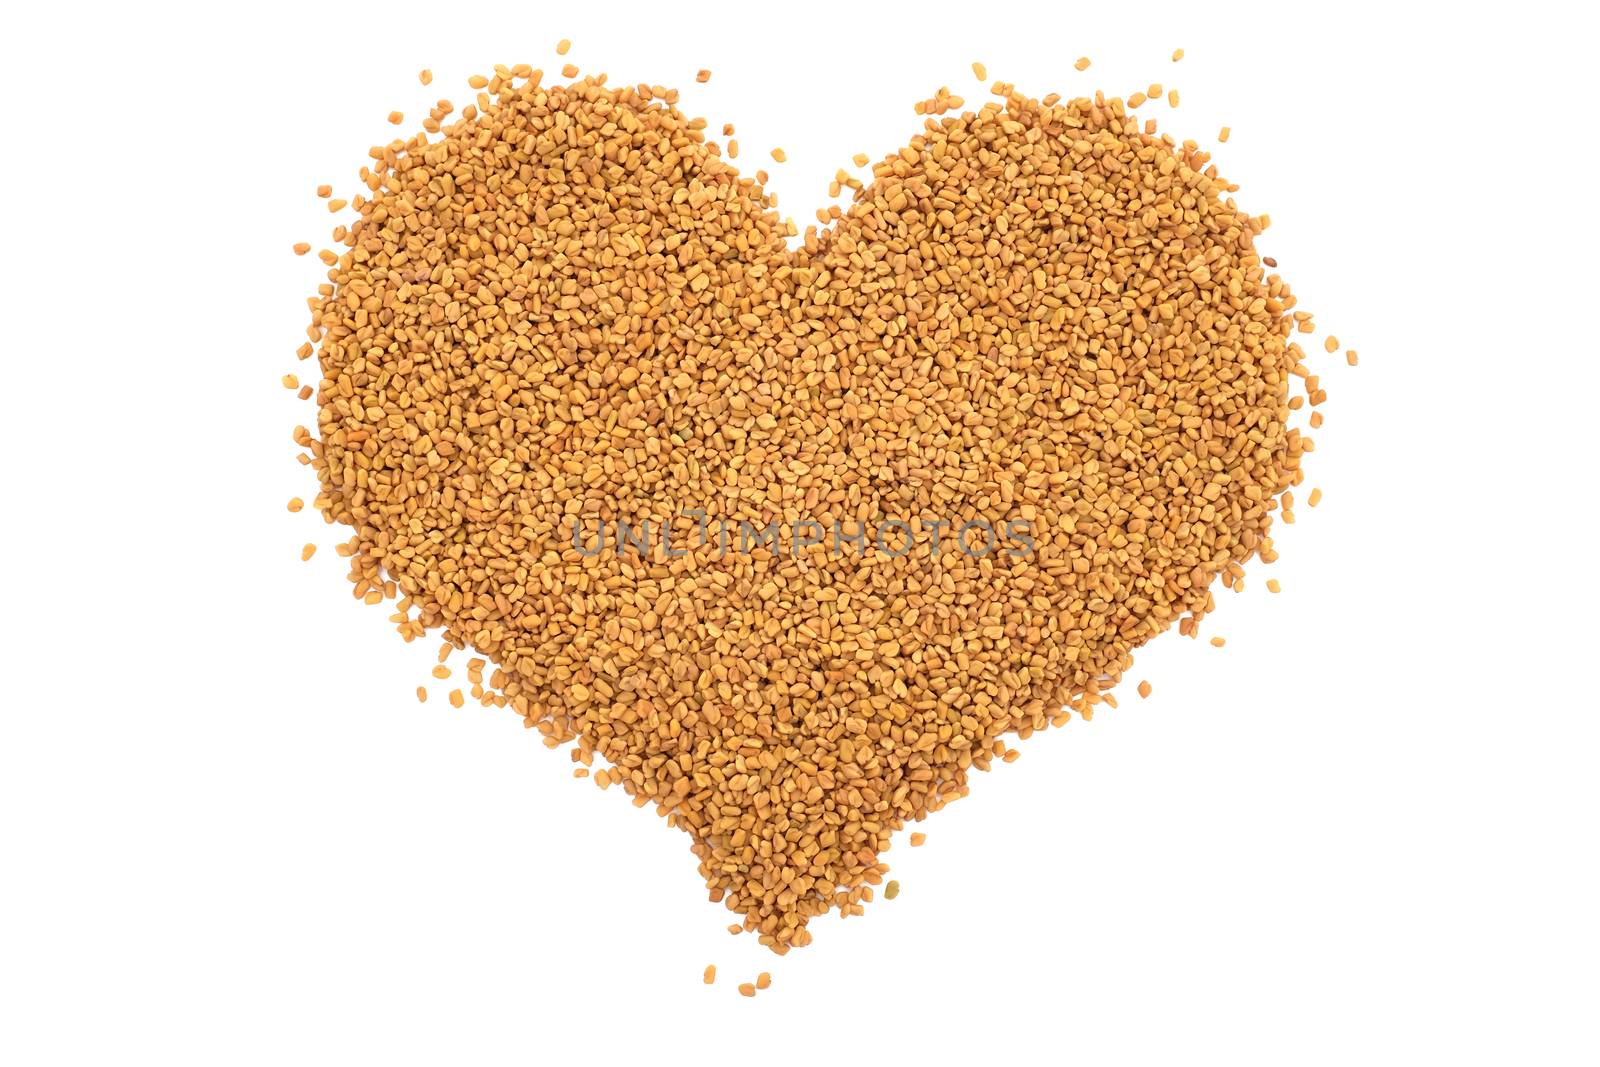 Dried fenugreek seeds in a heart shape by sarahdoow